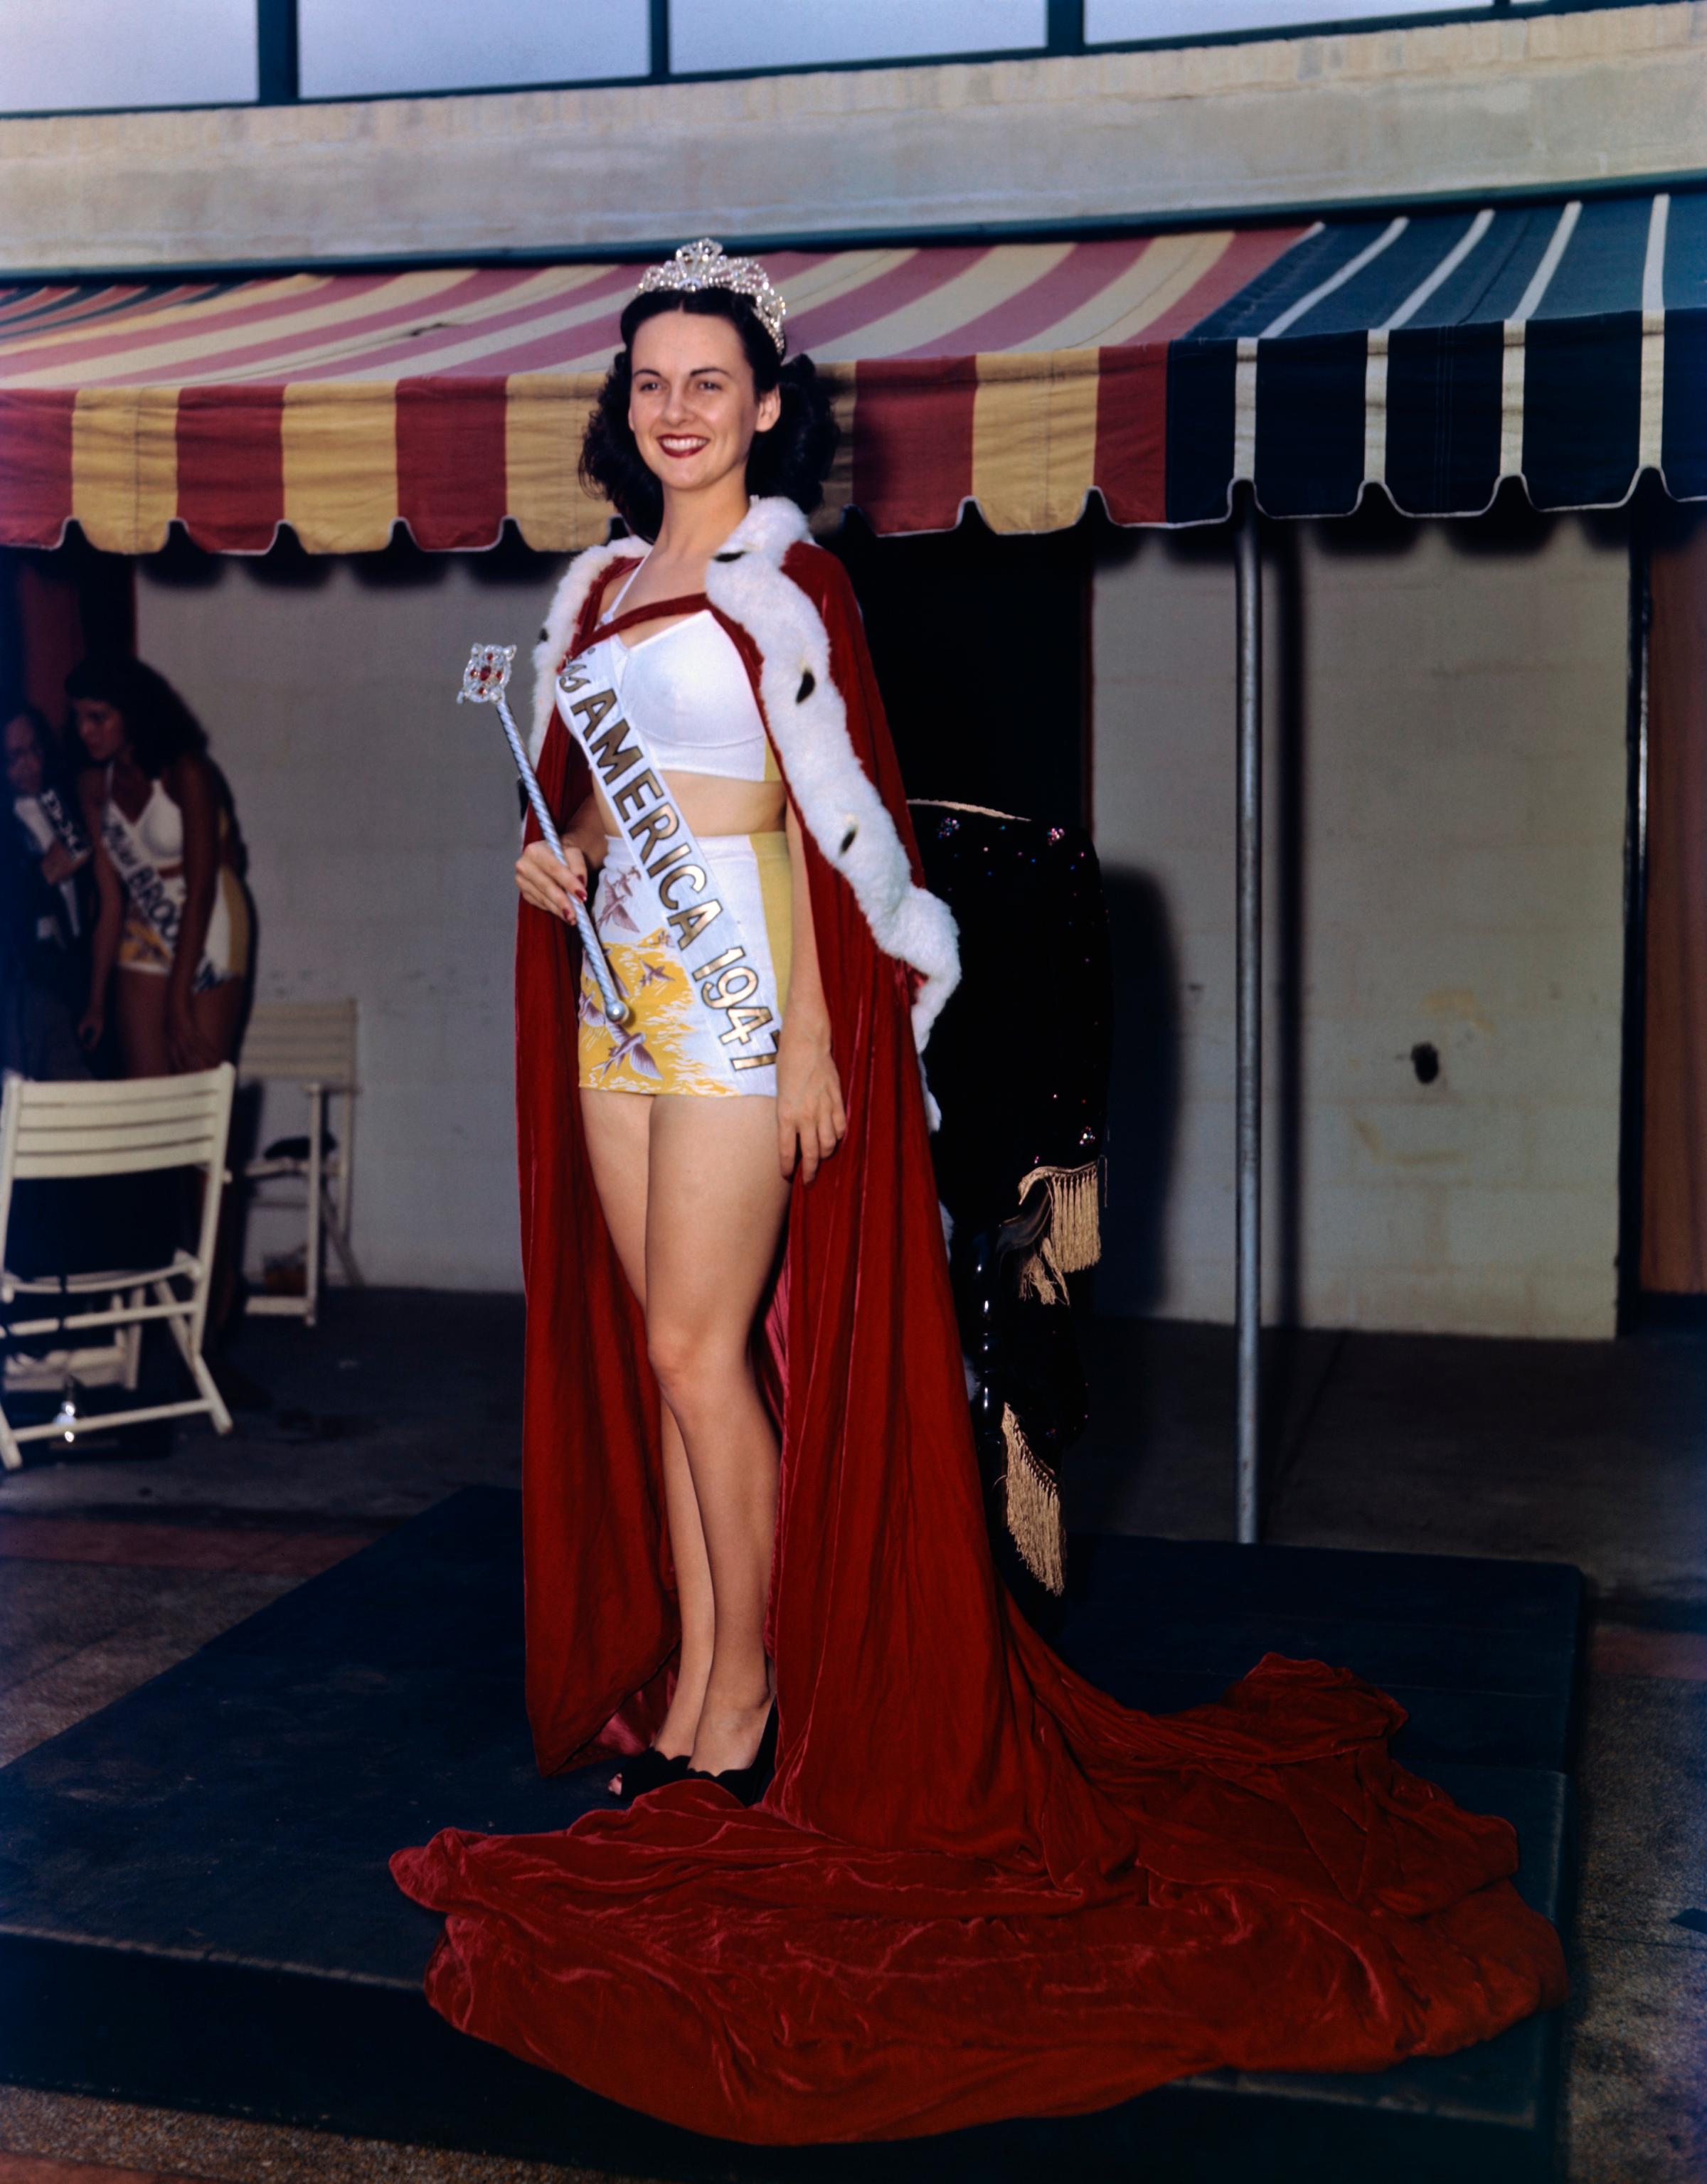 Barbara Jo Walker Wearing Miss America Crown